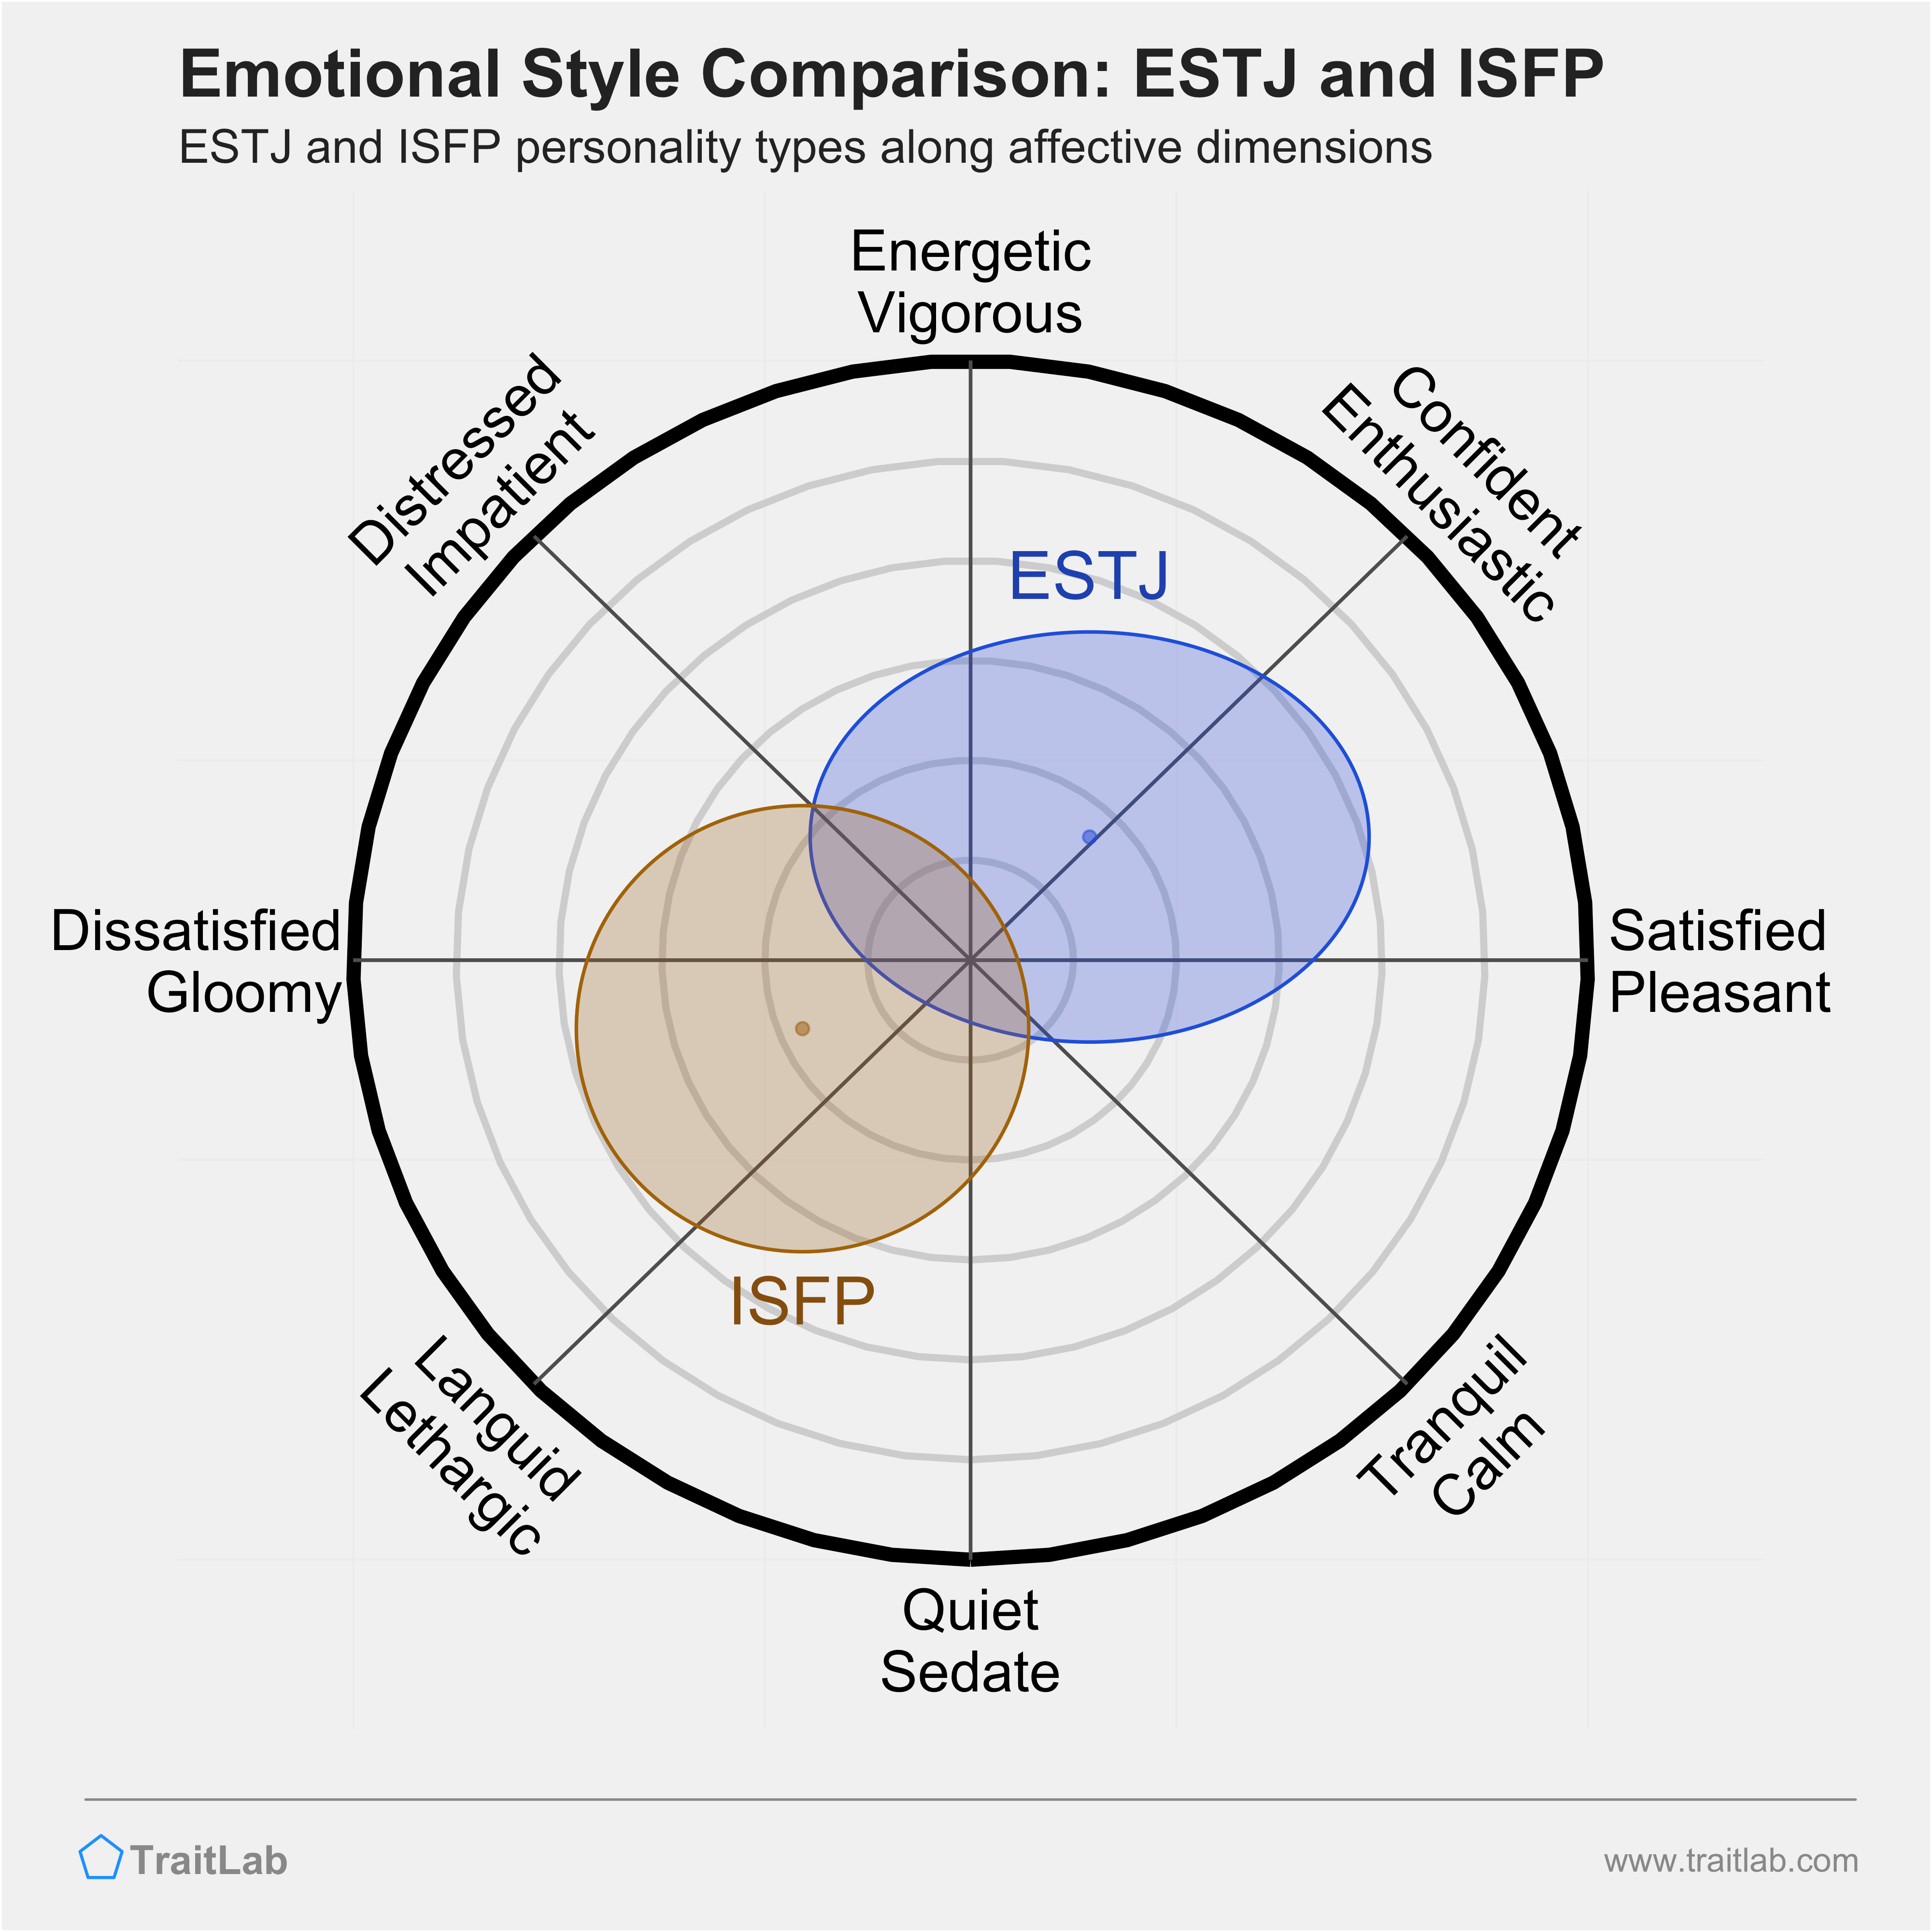 ESTJ and ISFP comparison across emotional (affective) dimensions